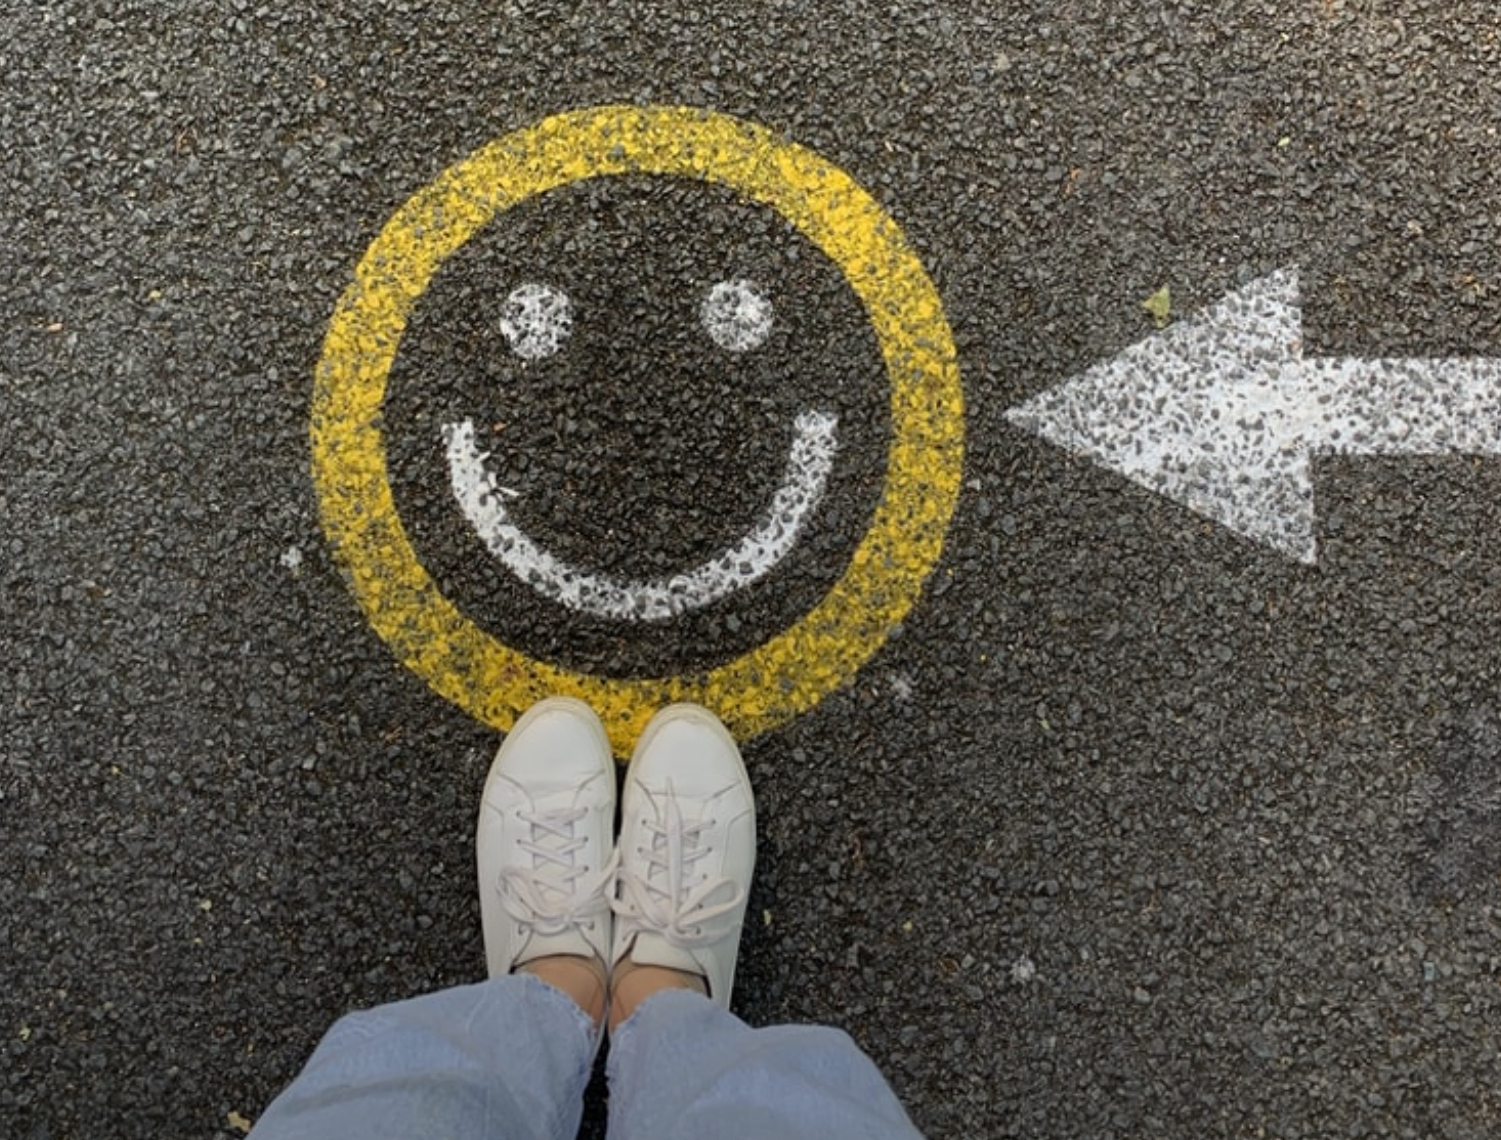  7 zakonet që i bëjnë më të lumtur njerëzit, sipas studiuesve